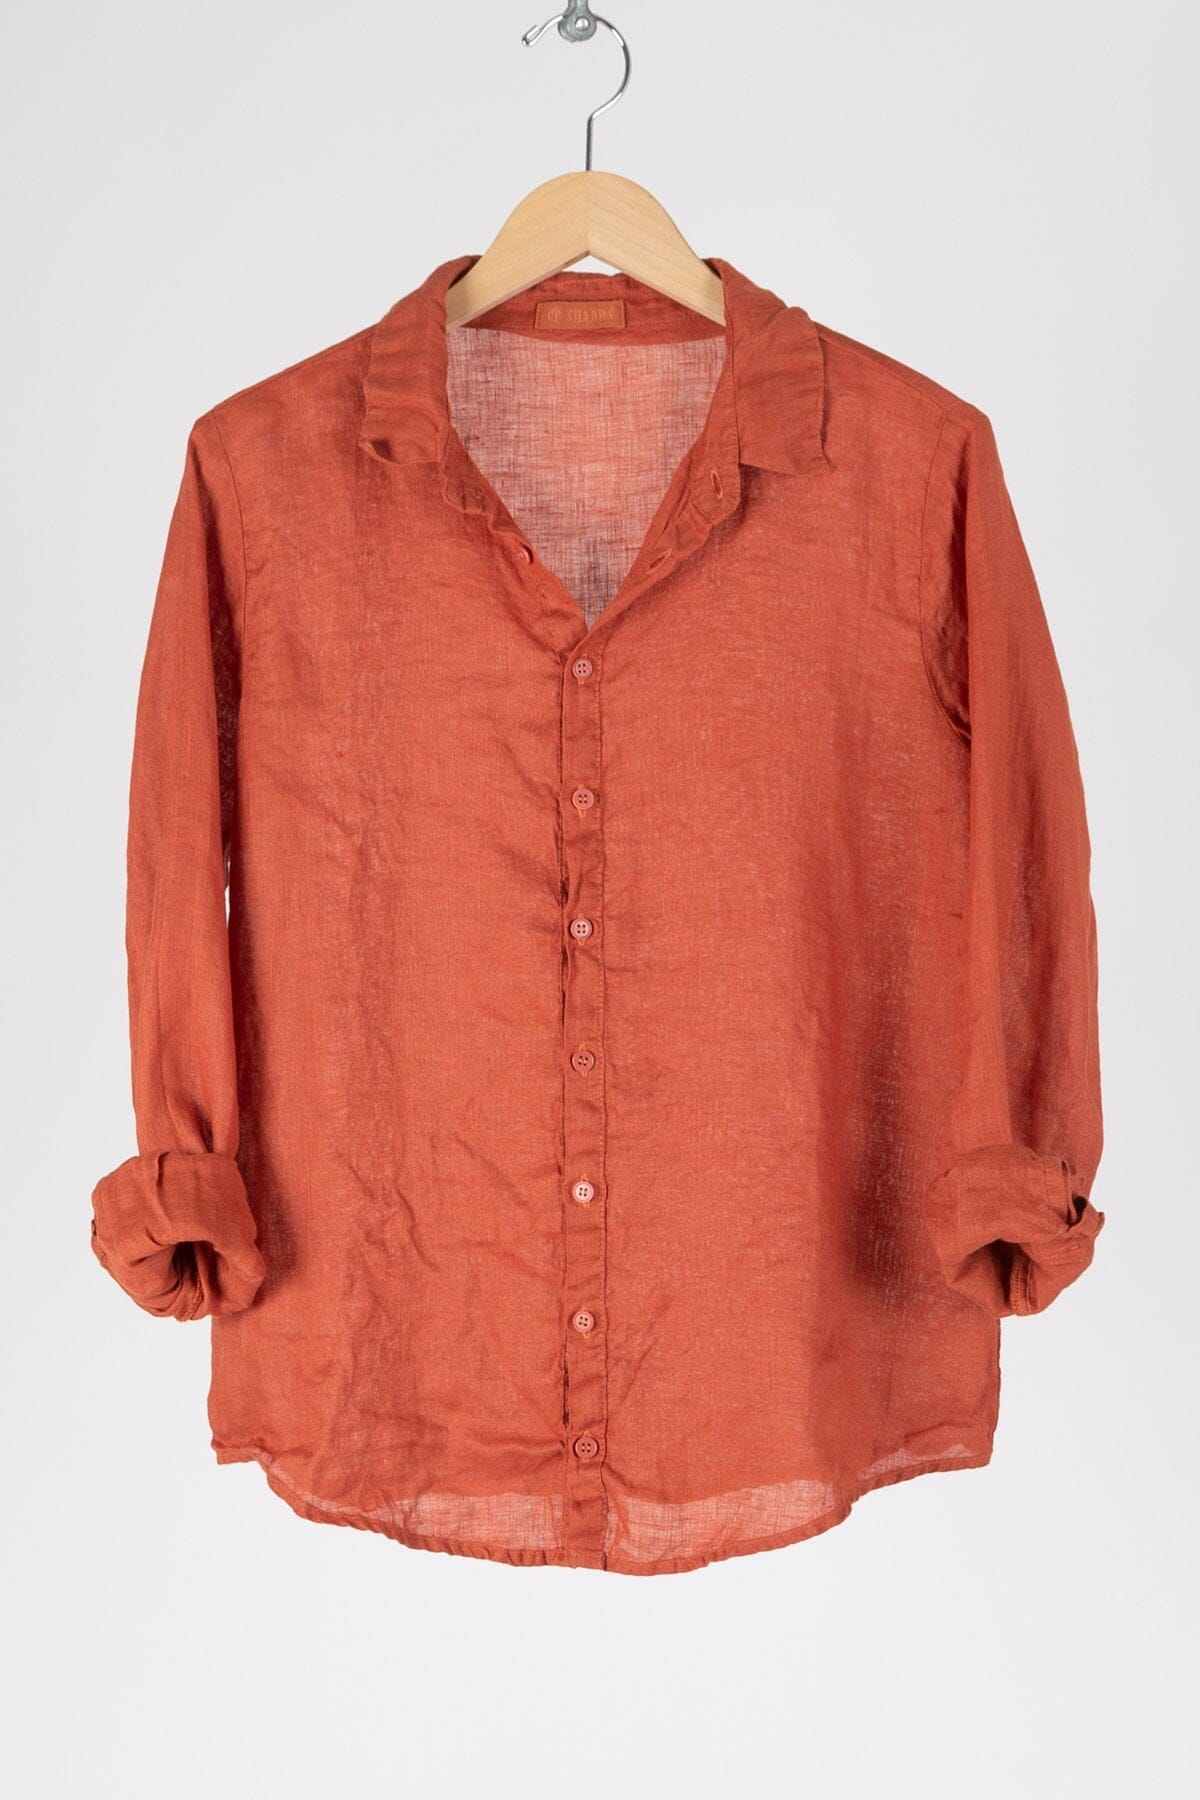 Romy - Linen S10 - Linen Shirt/Top/Tunic CP Shades rust